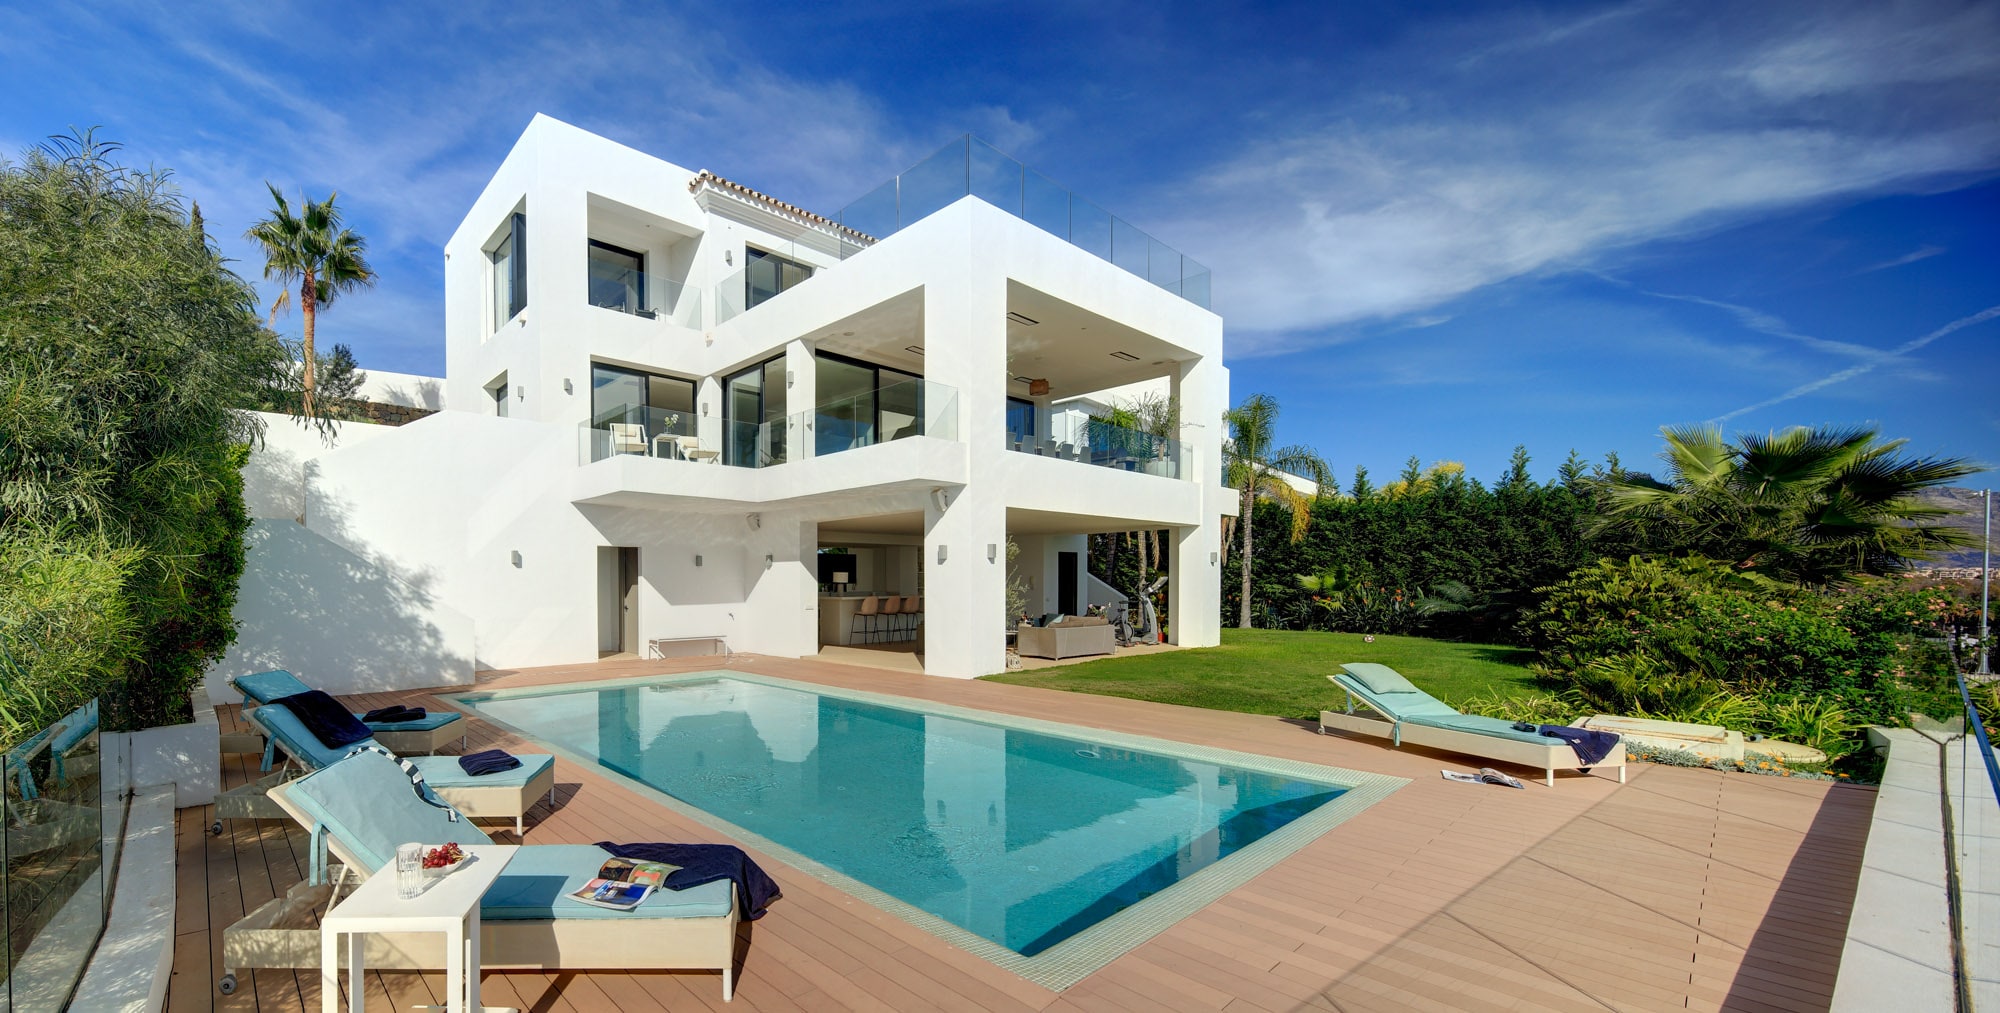 Villa Mahi Marbella - Vue extérieure de la villa avec piscine